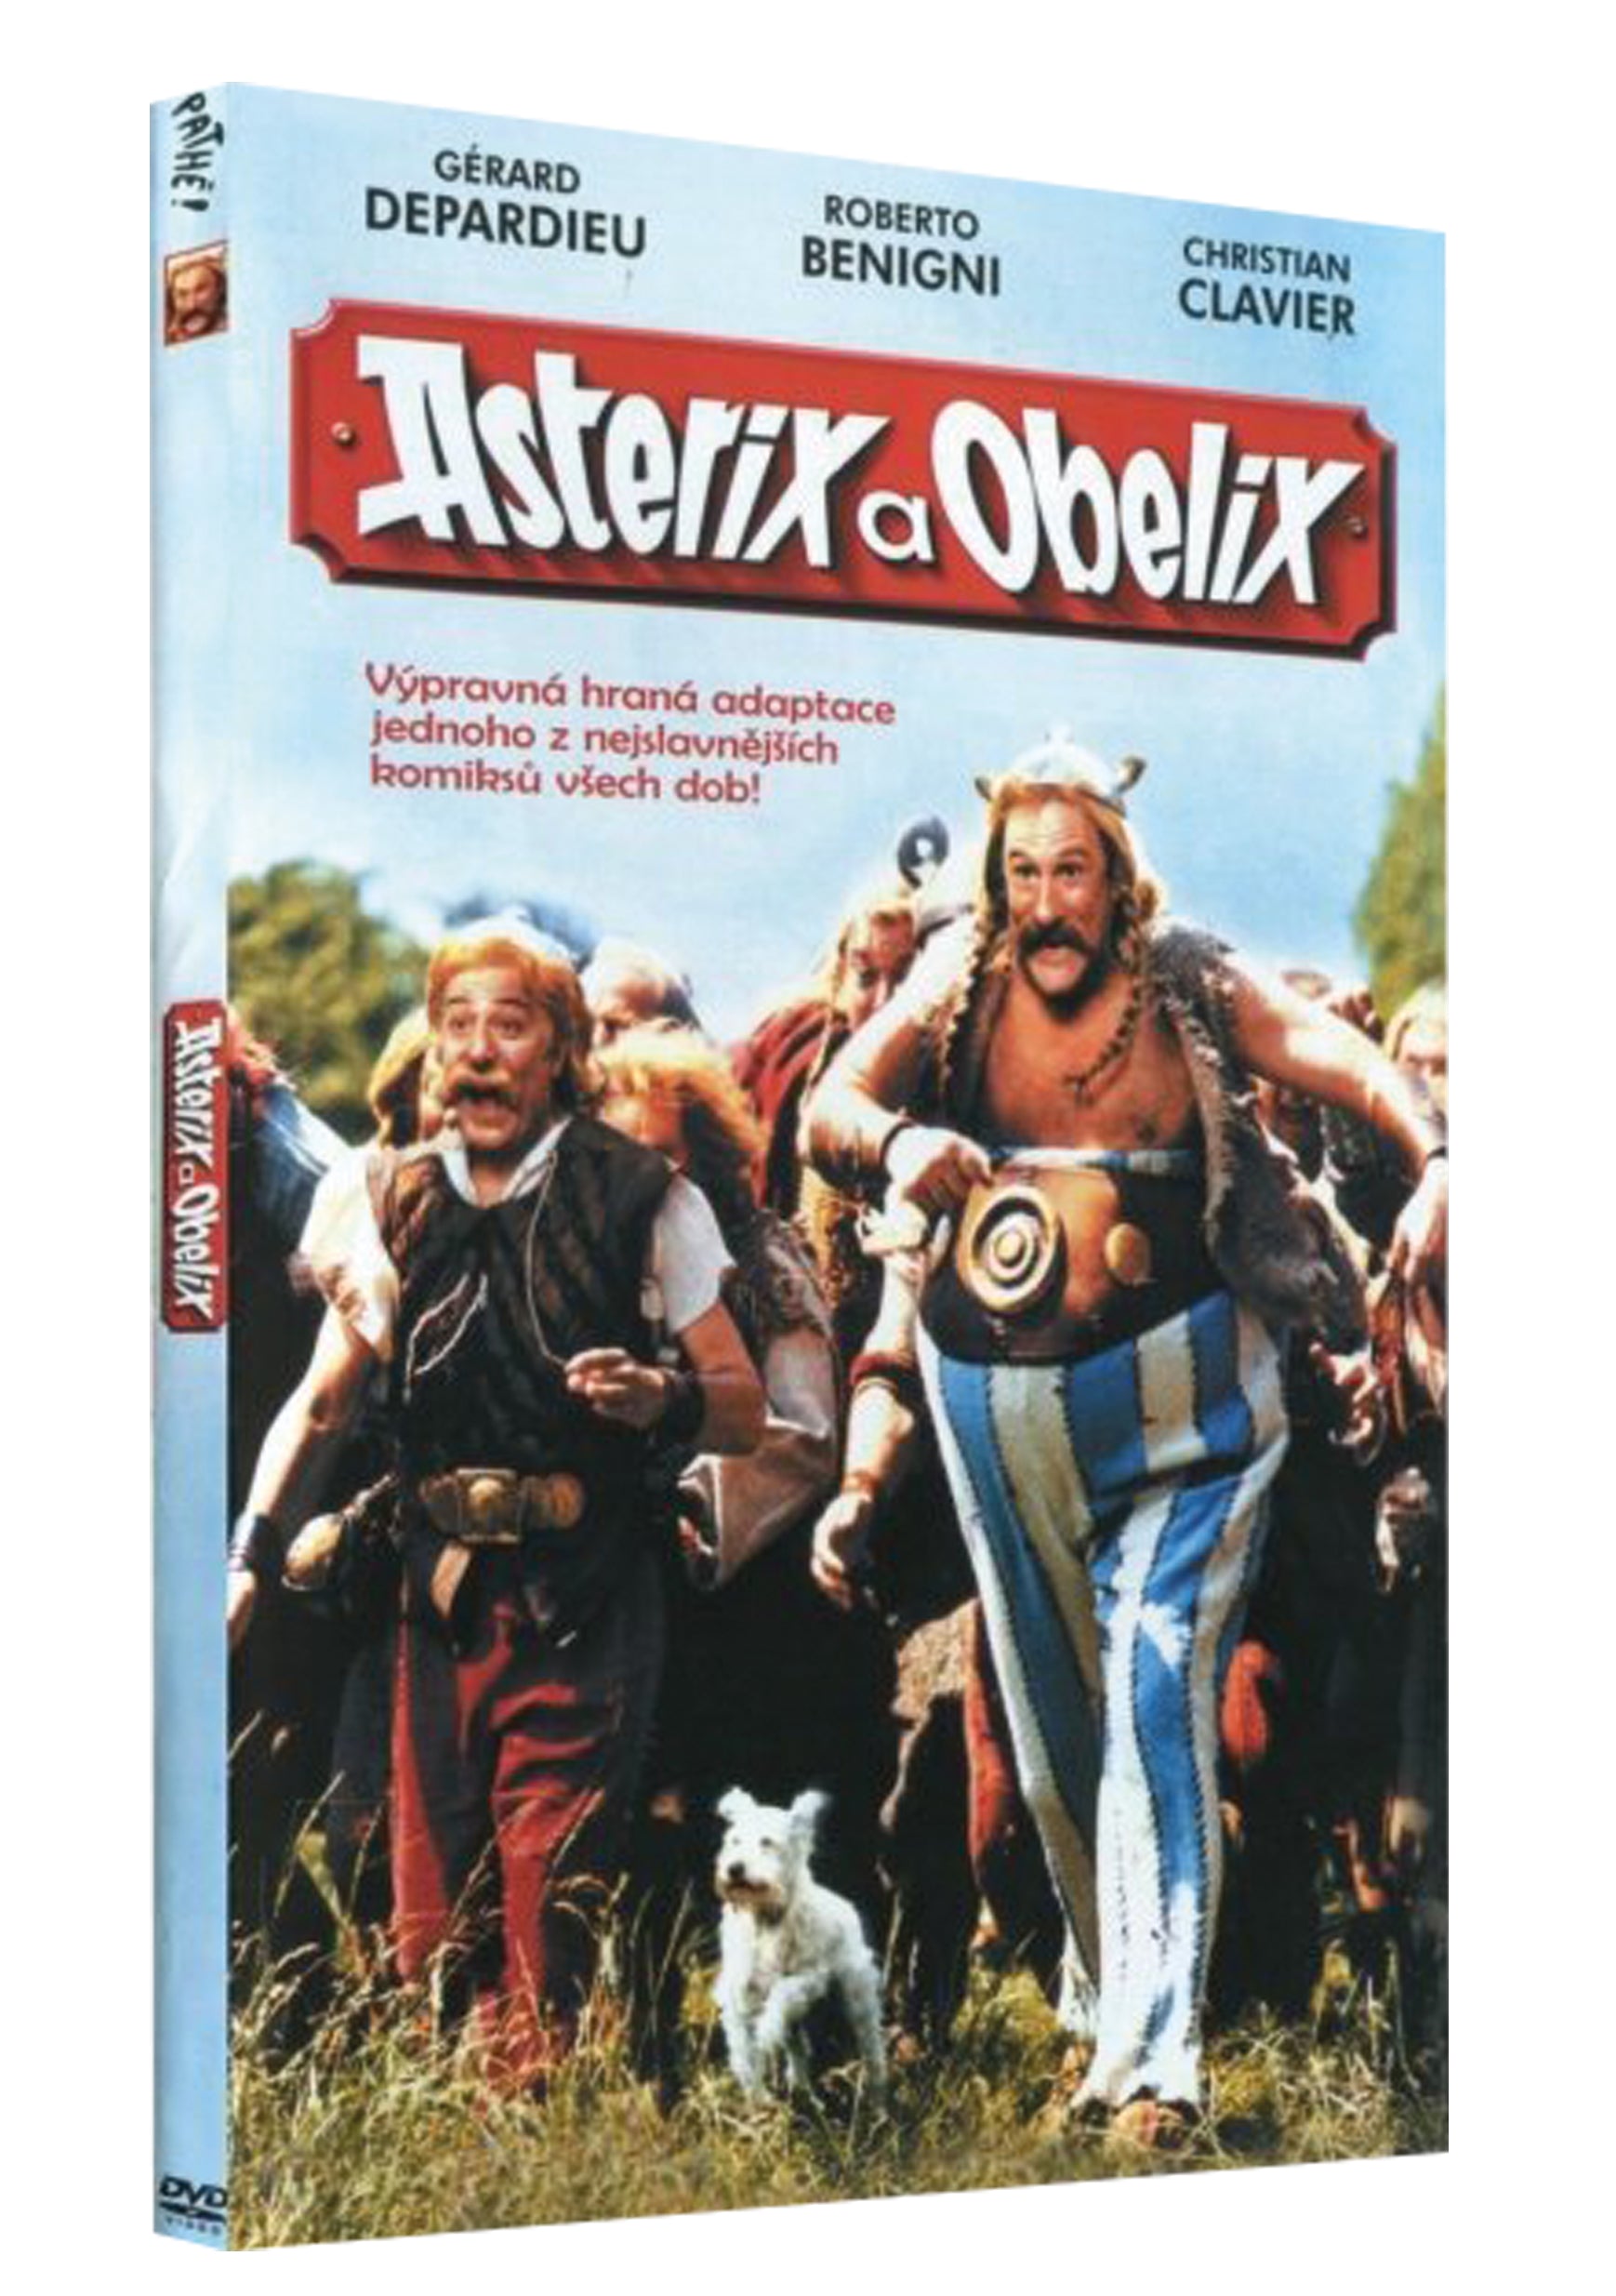 Asterix und Obelix treten gegen Caesar an / Asterix und Obelix